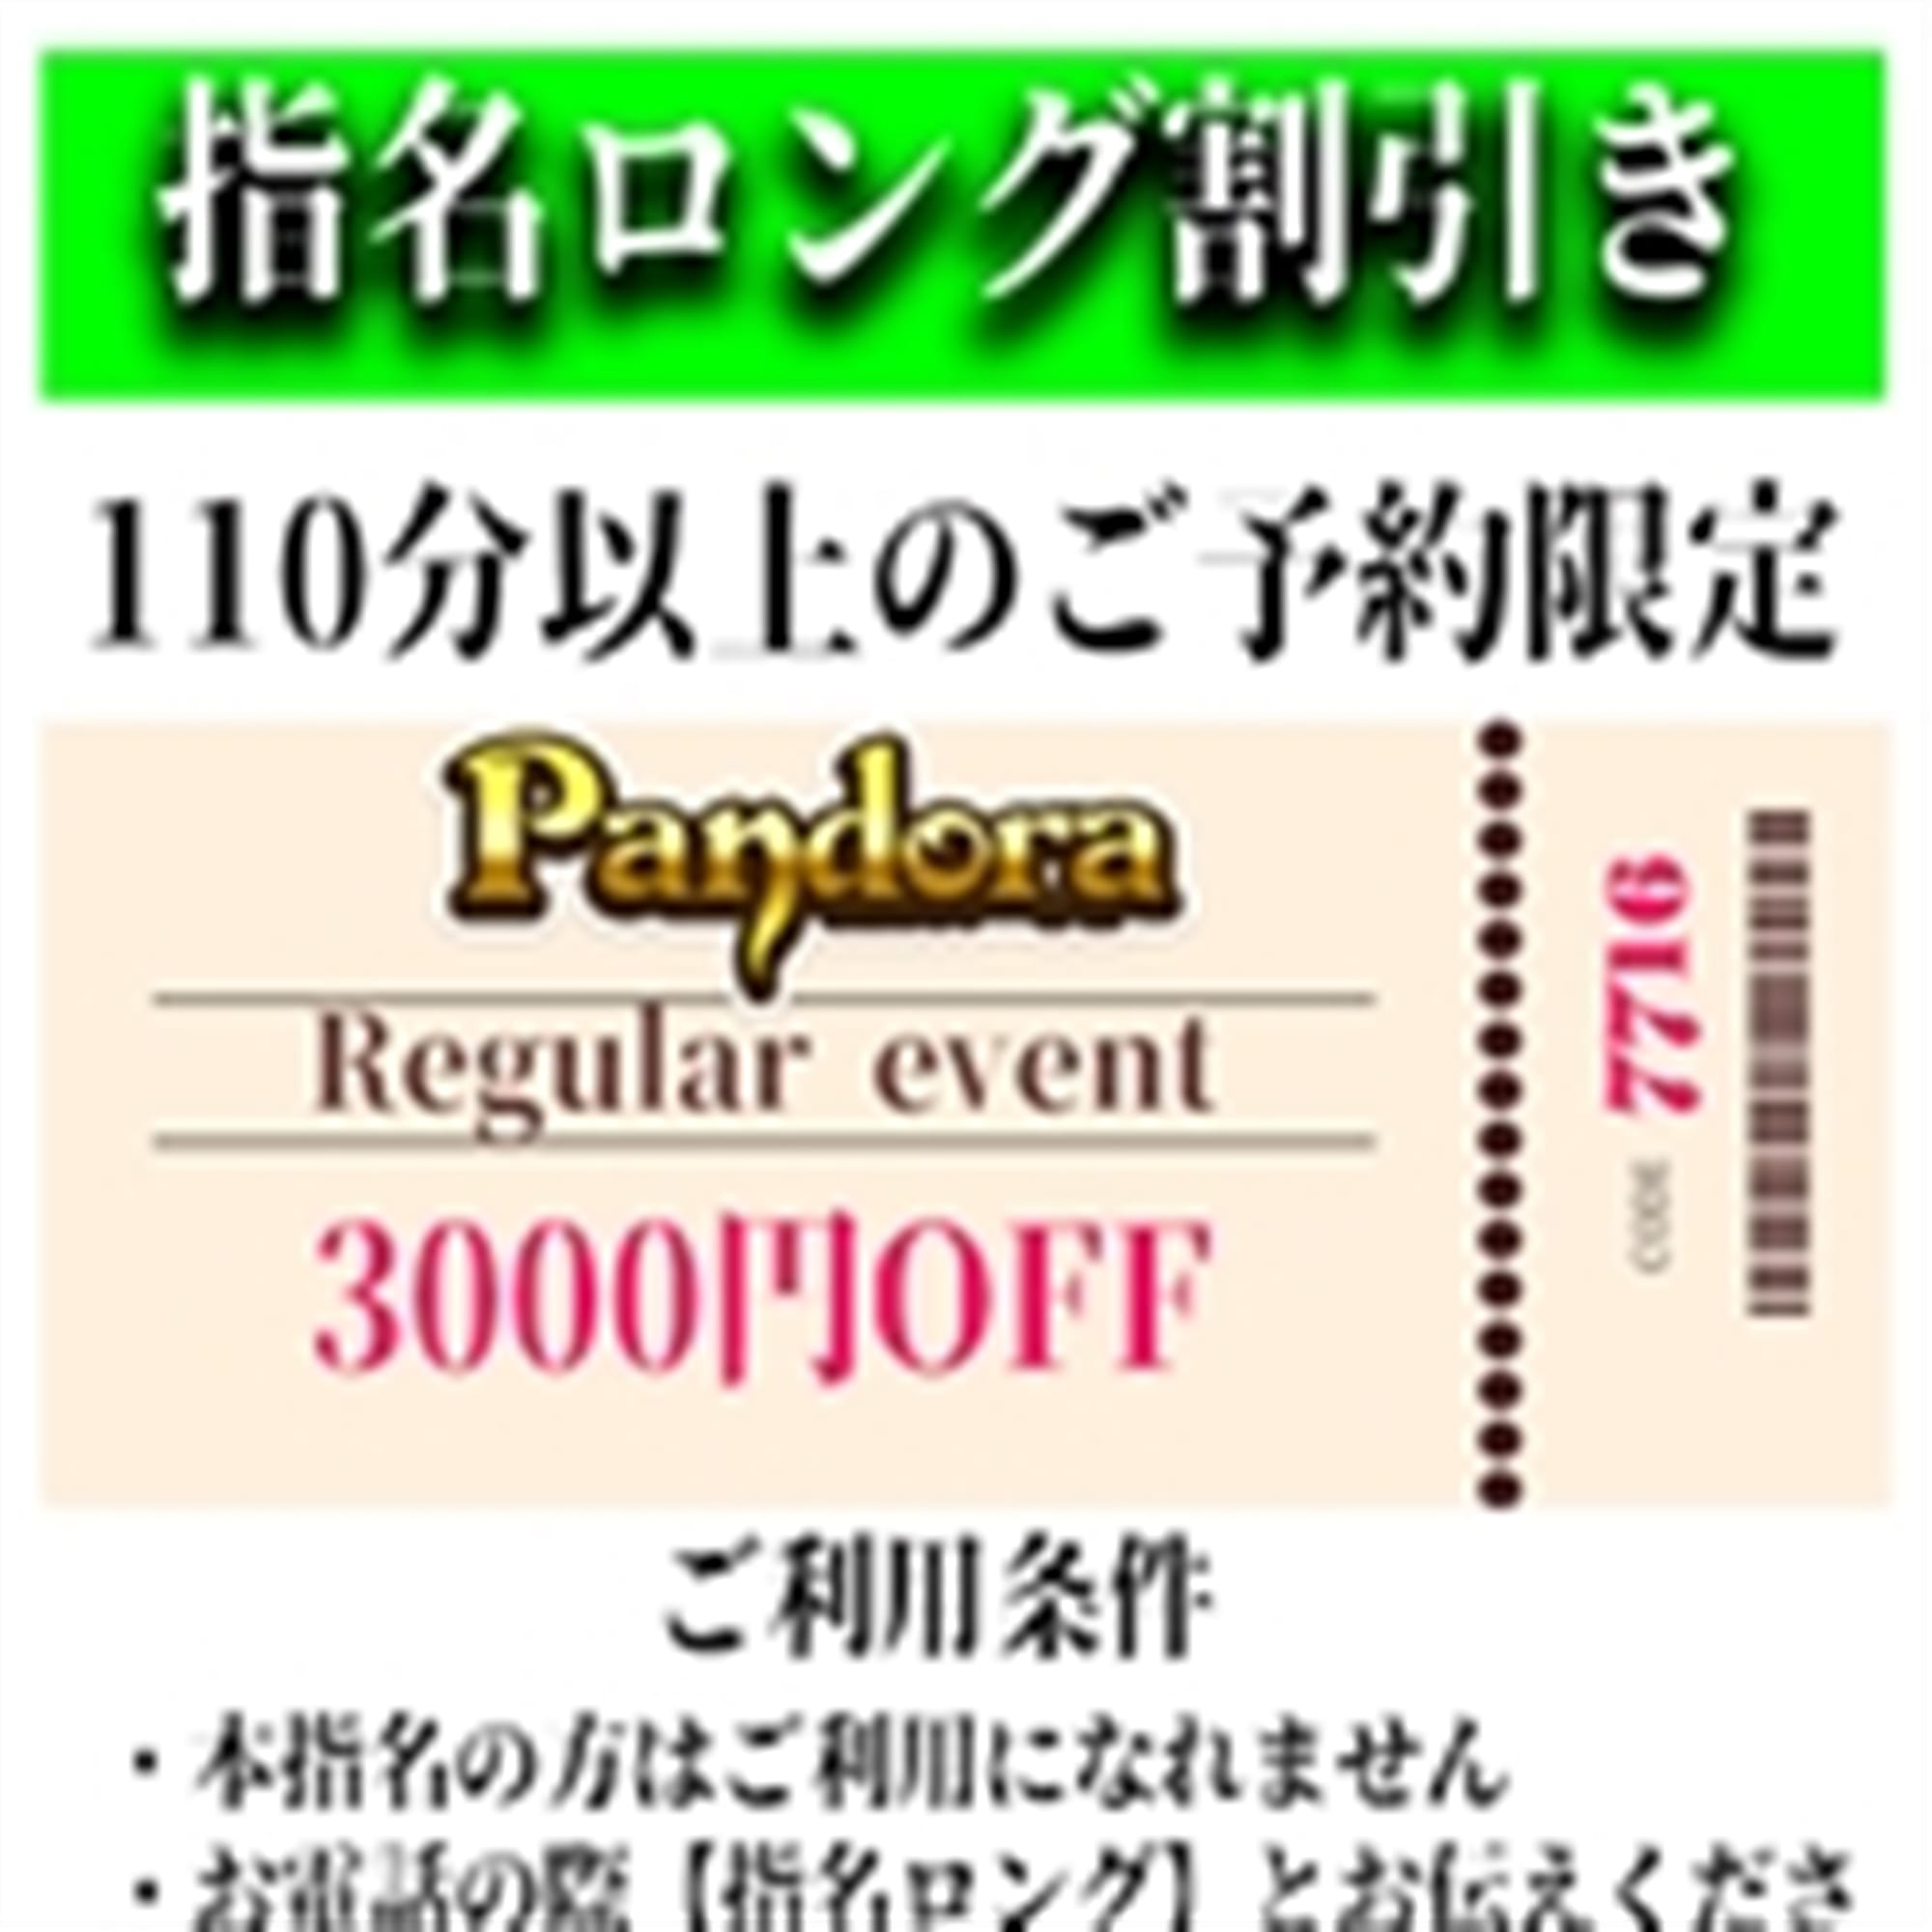 「ご指名のお客様も遊べるロングコース割引」04/24(水) 03:37 | Pandora(パンドラ)新潟のお得なニュース